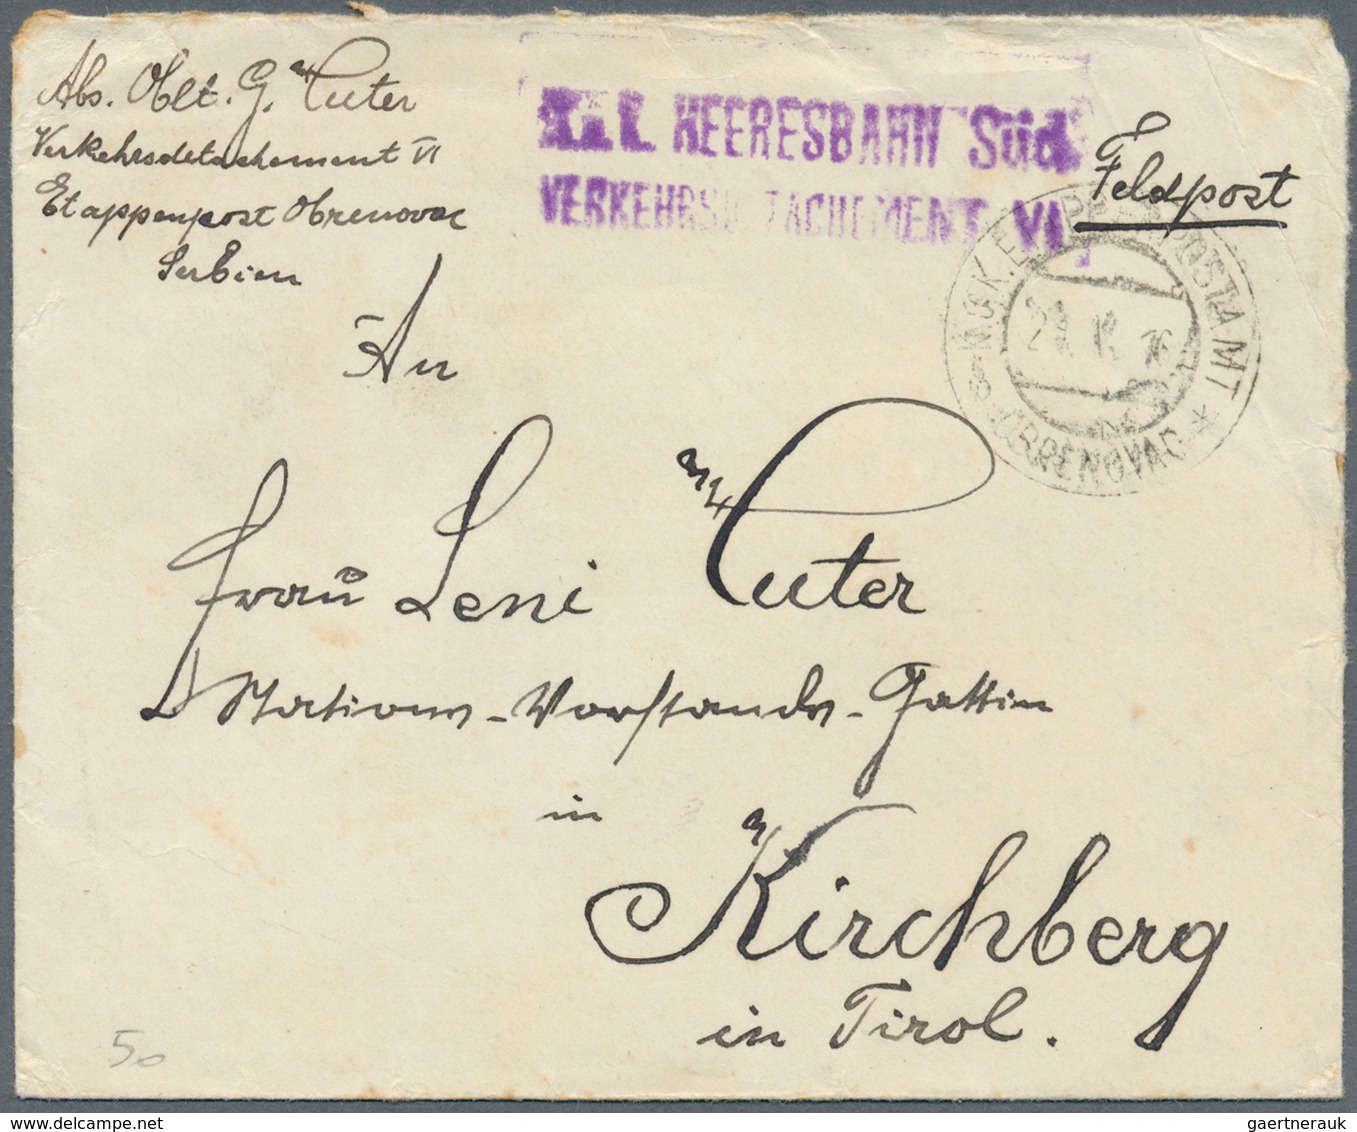 27649 Österreich - Militärpost / Feldpost: 1820/1918, hochinteressante Partie von ca. 125 Briefen/Karten,